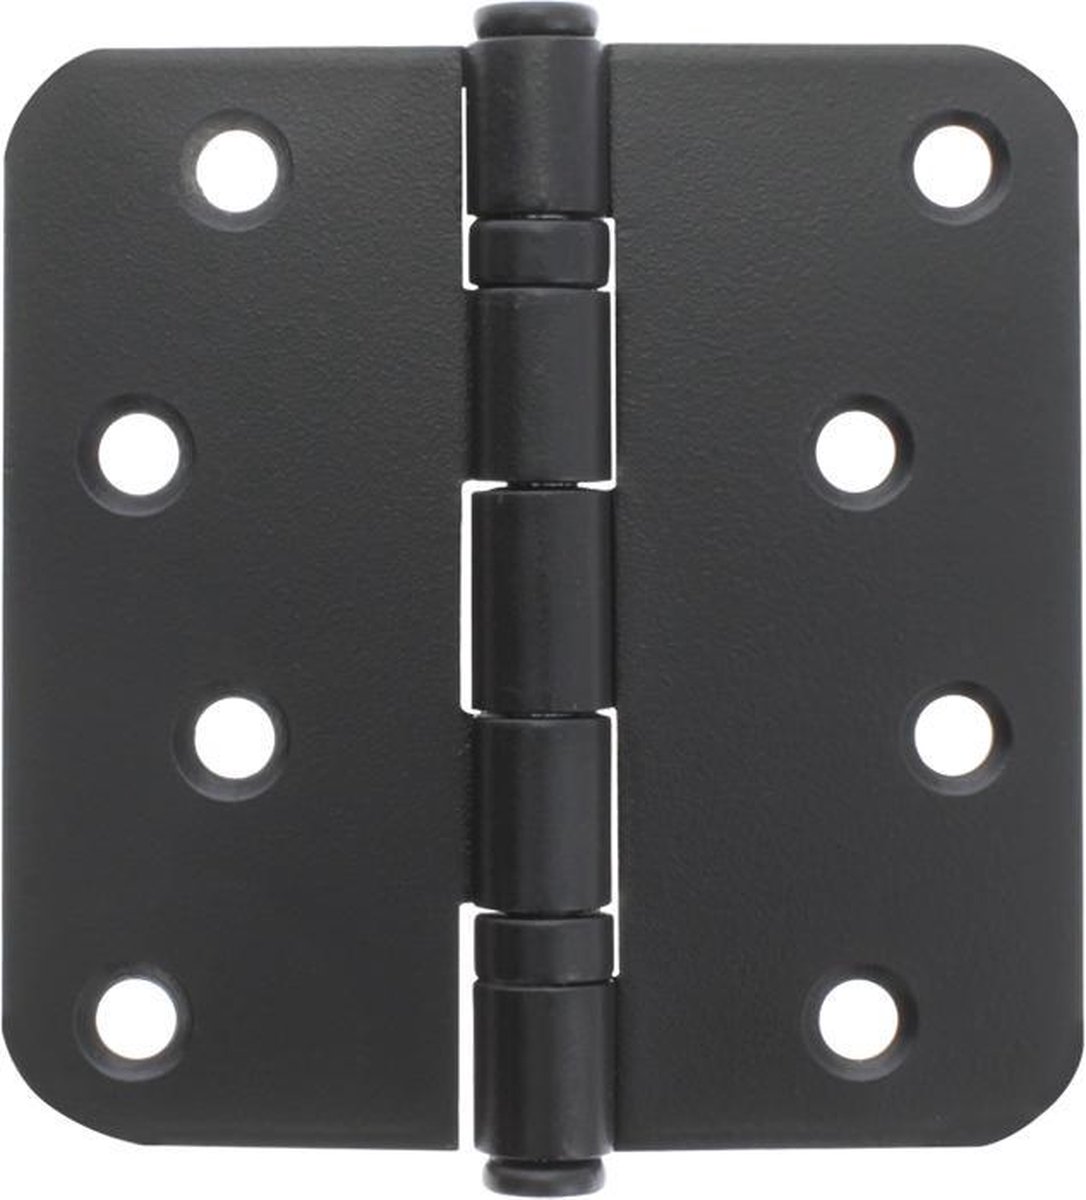 Starx - deurscharnier -kogellager - 89 x 89 - ronde hoek - zwart - set van 2 stuks